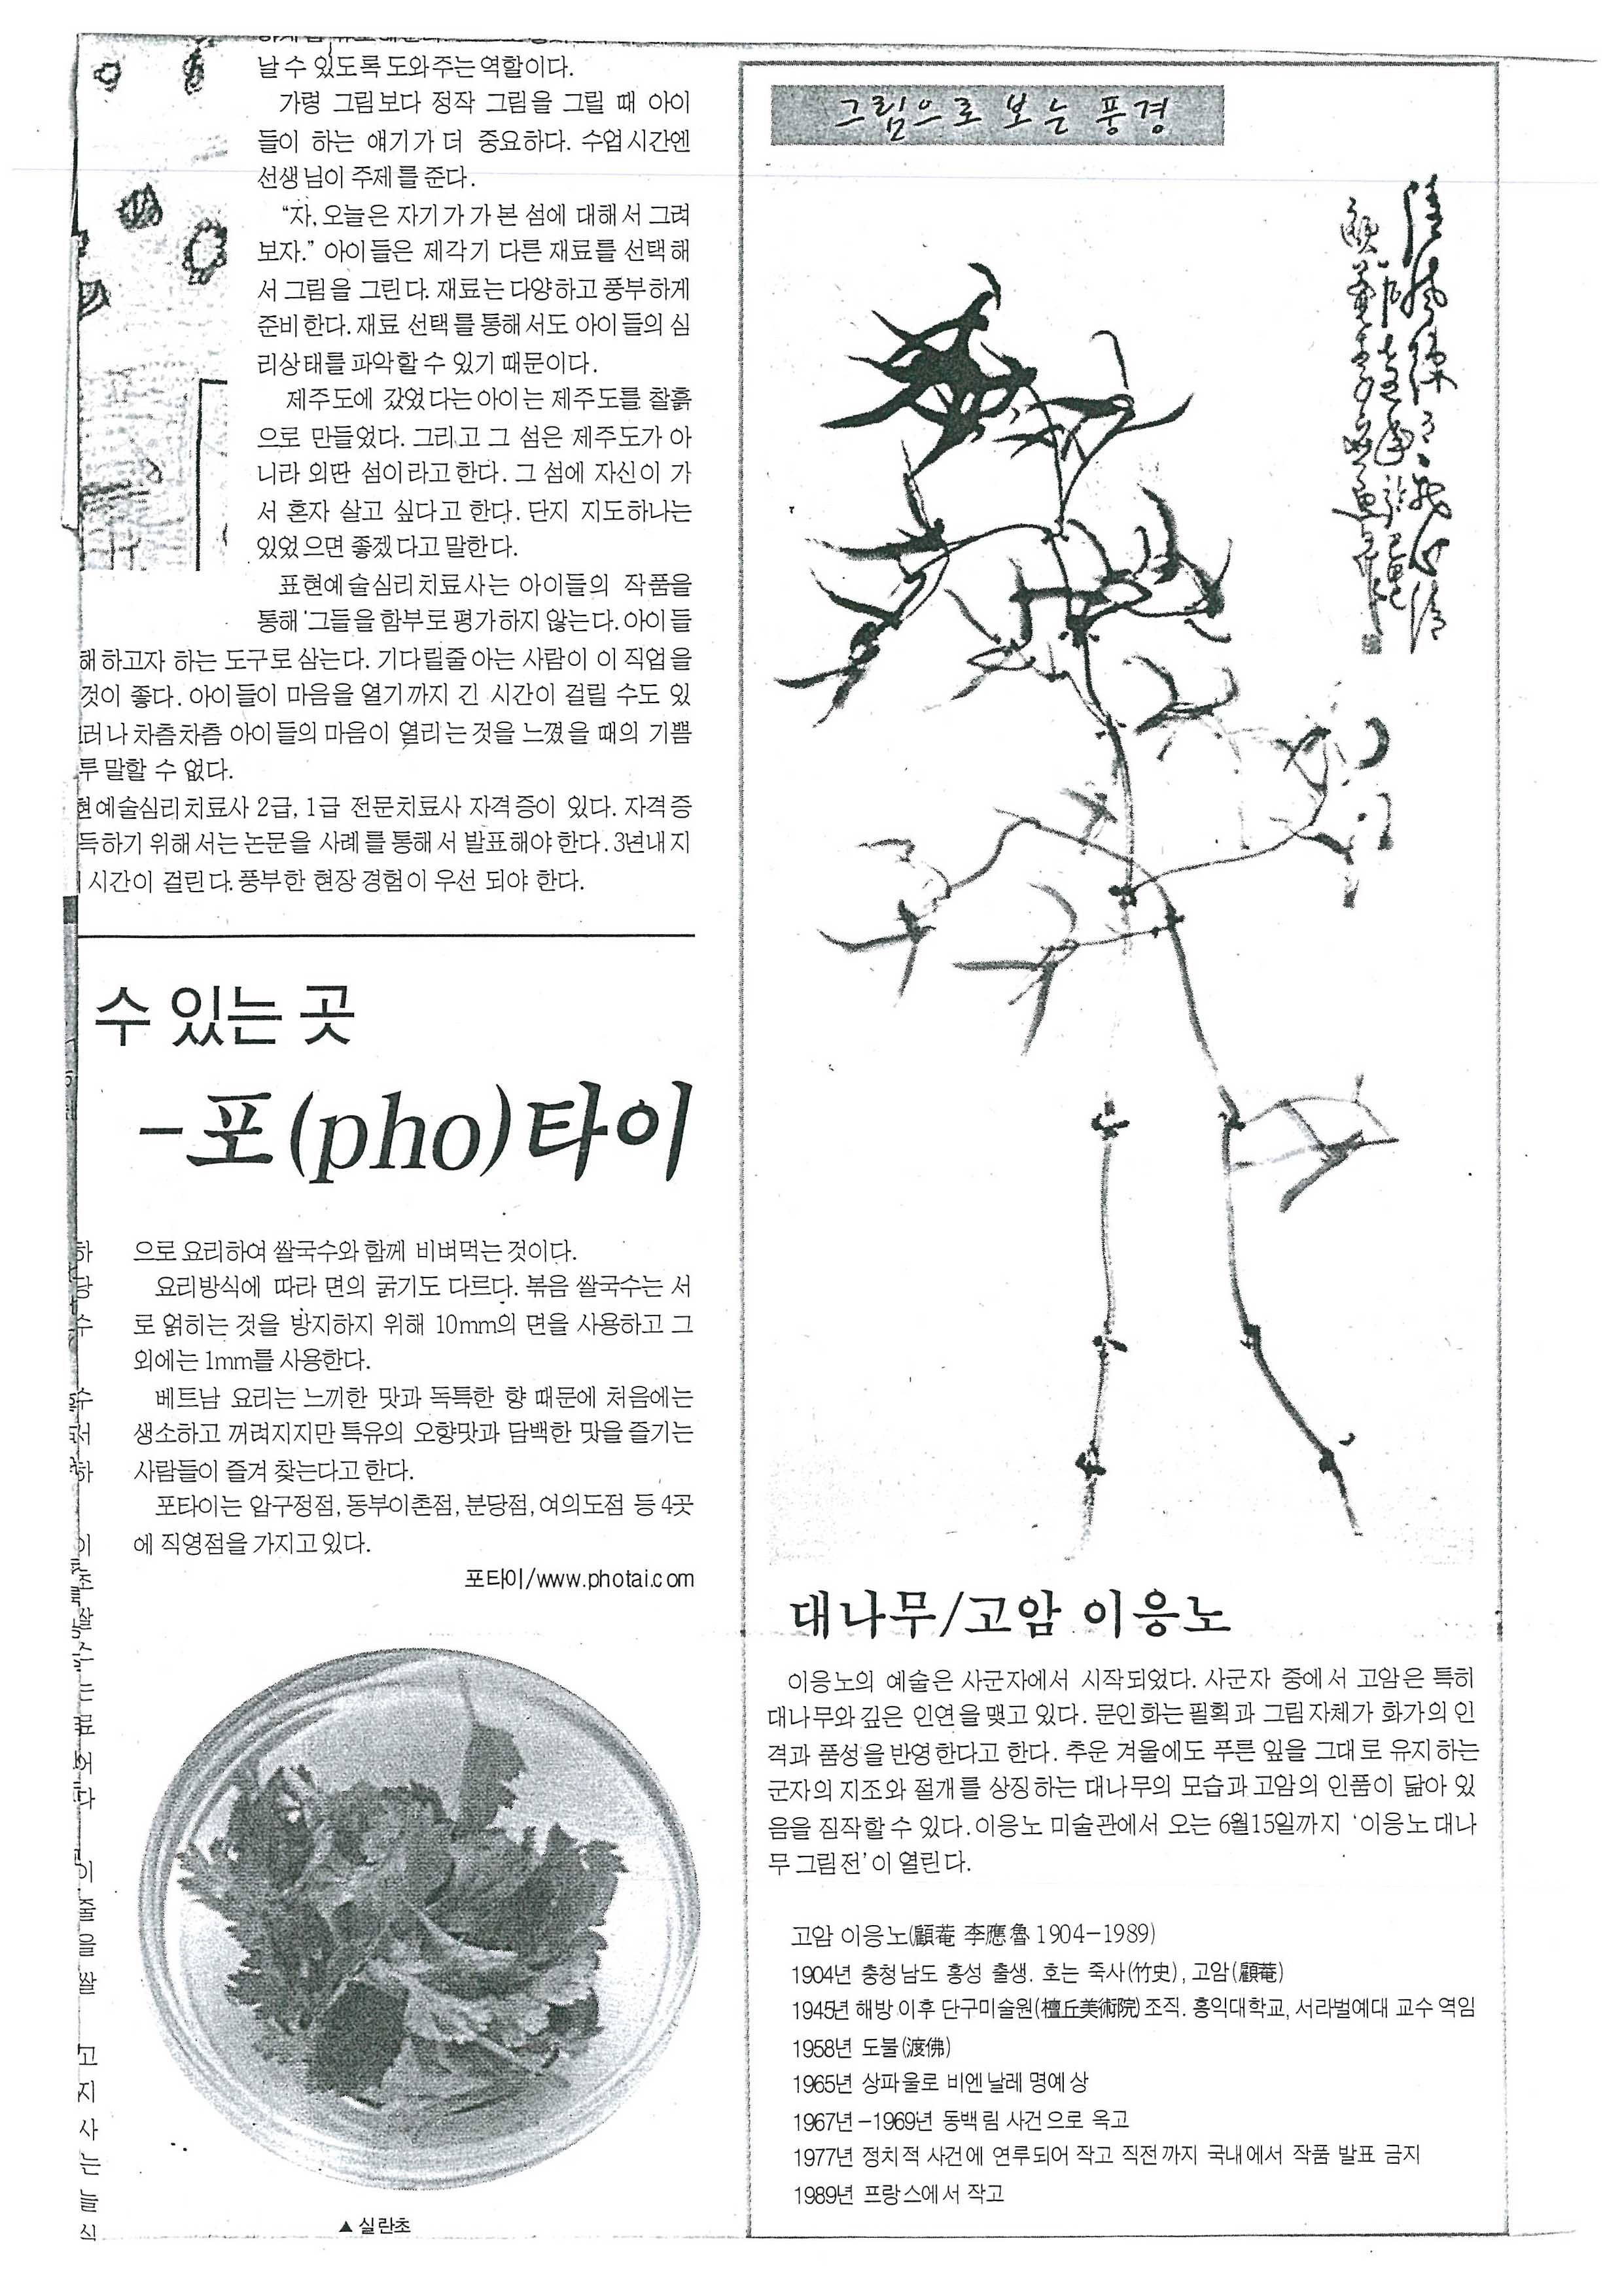  「그림으로 보는 풍경 대나무/고암 이응노」, 『청소년 신문』 